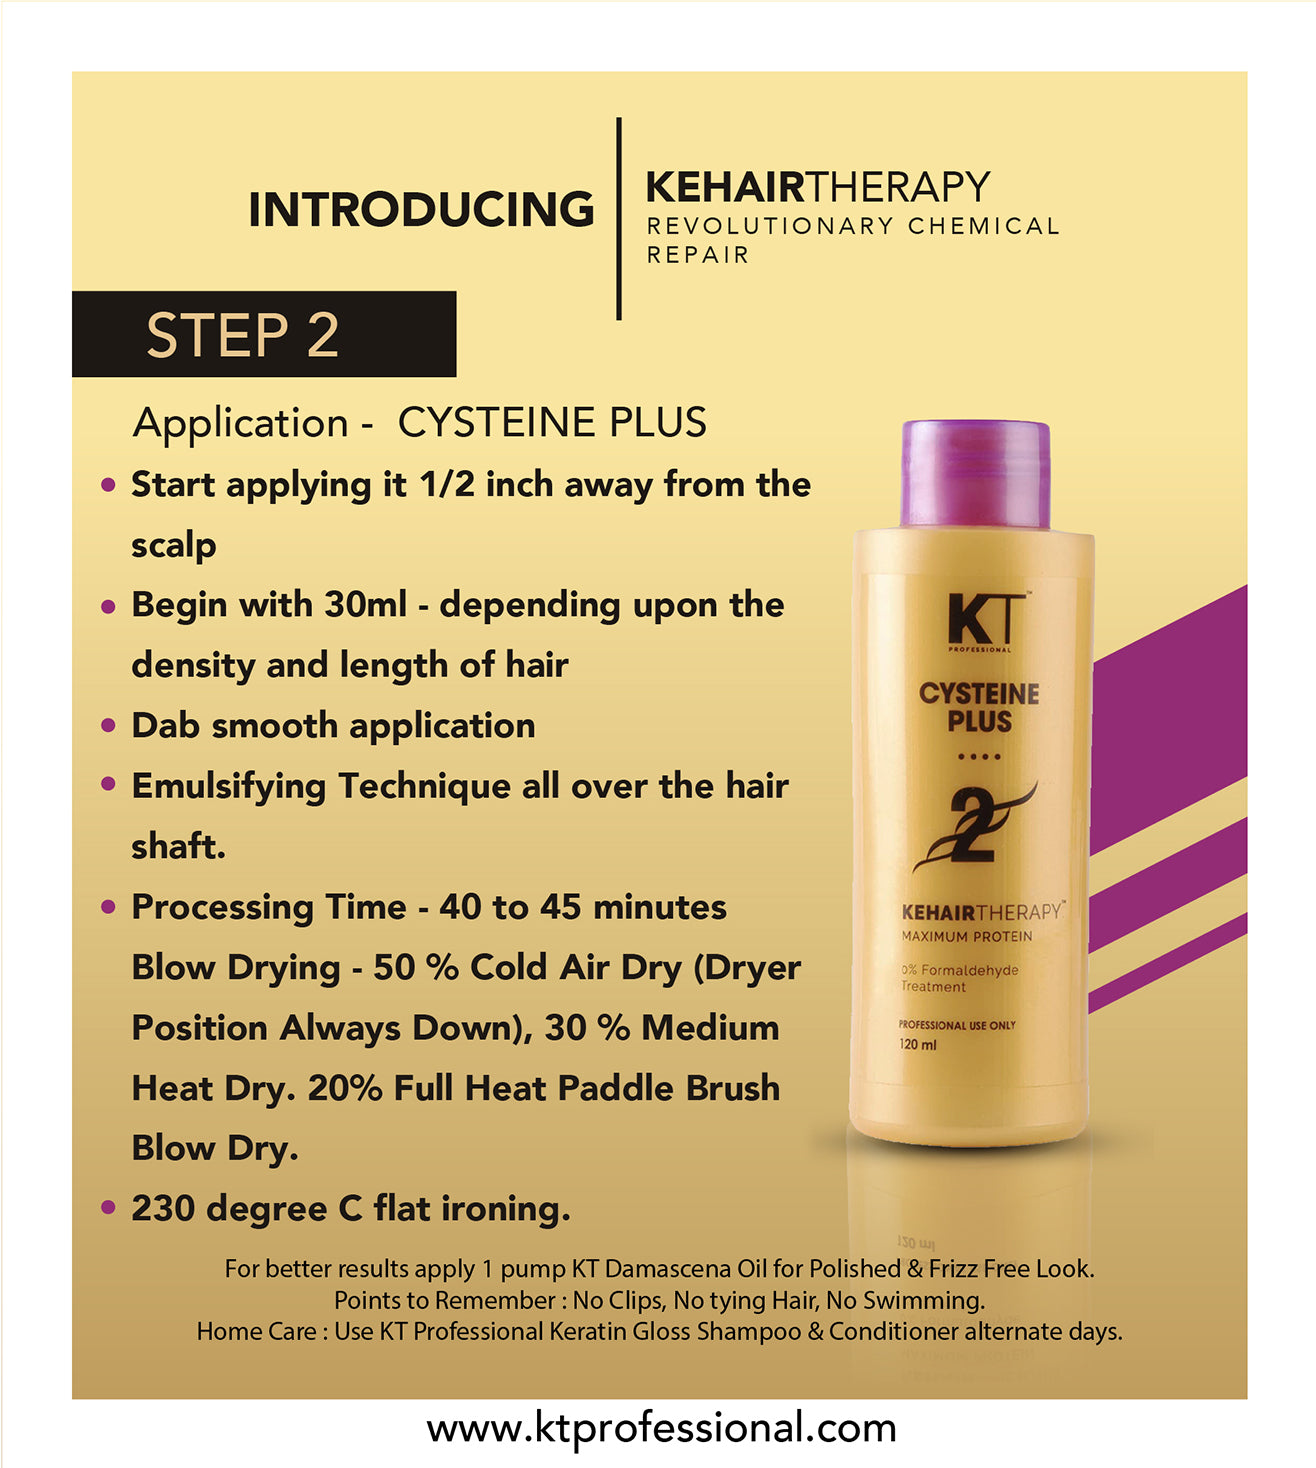 KEHAIRTHERAPY KT Professional Home Keratin CYSTEINE PLUS Starter Kit (480ml)